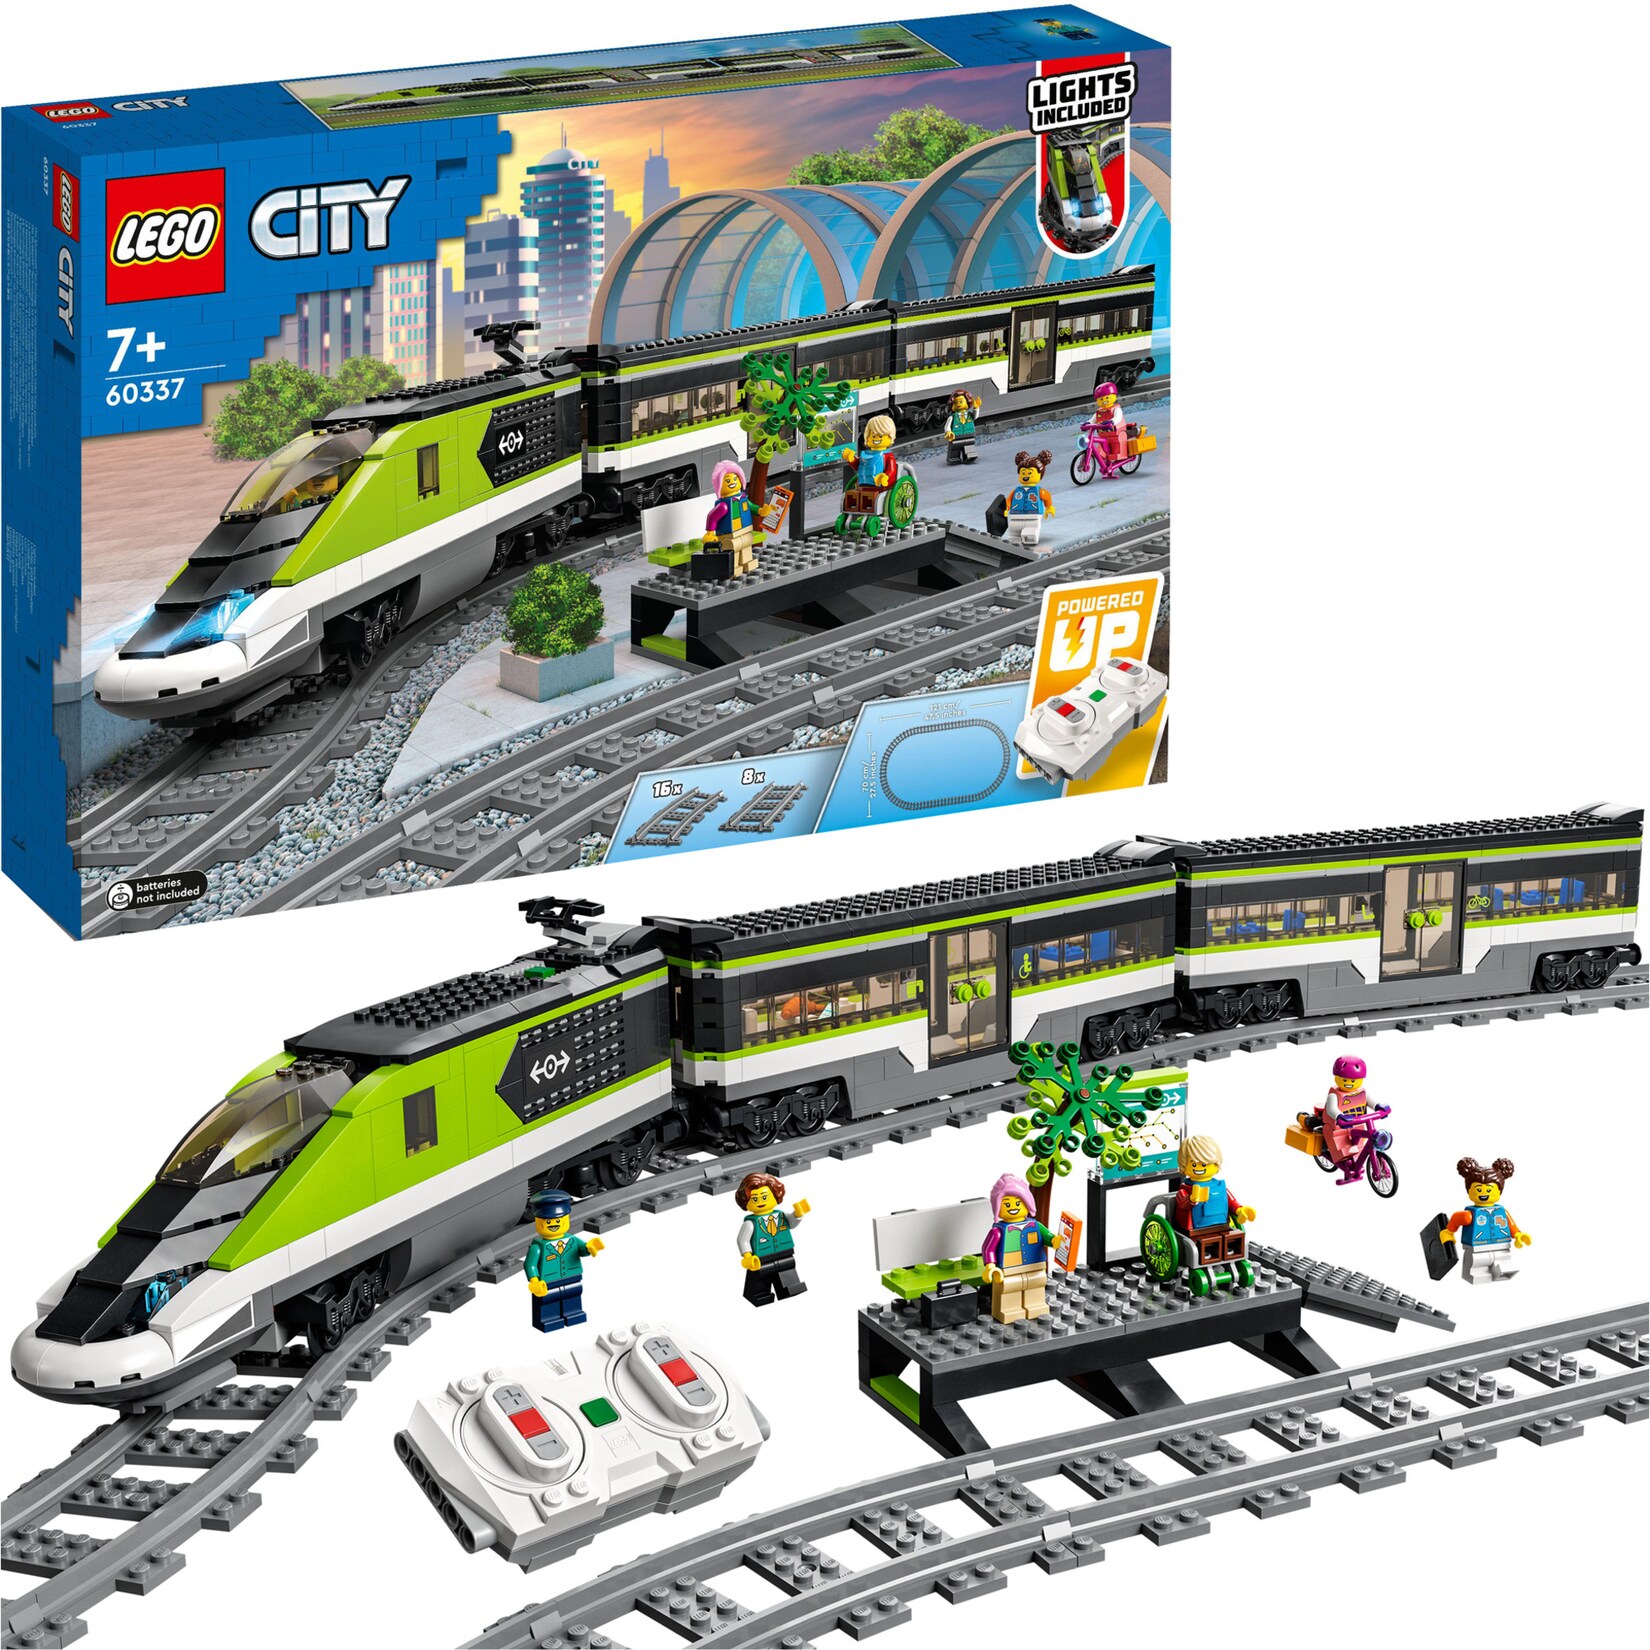 LEGO Konstruktionsspielzeug City Personen-Schnellzug